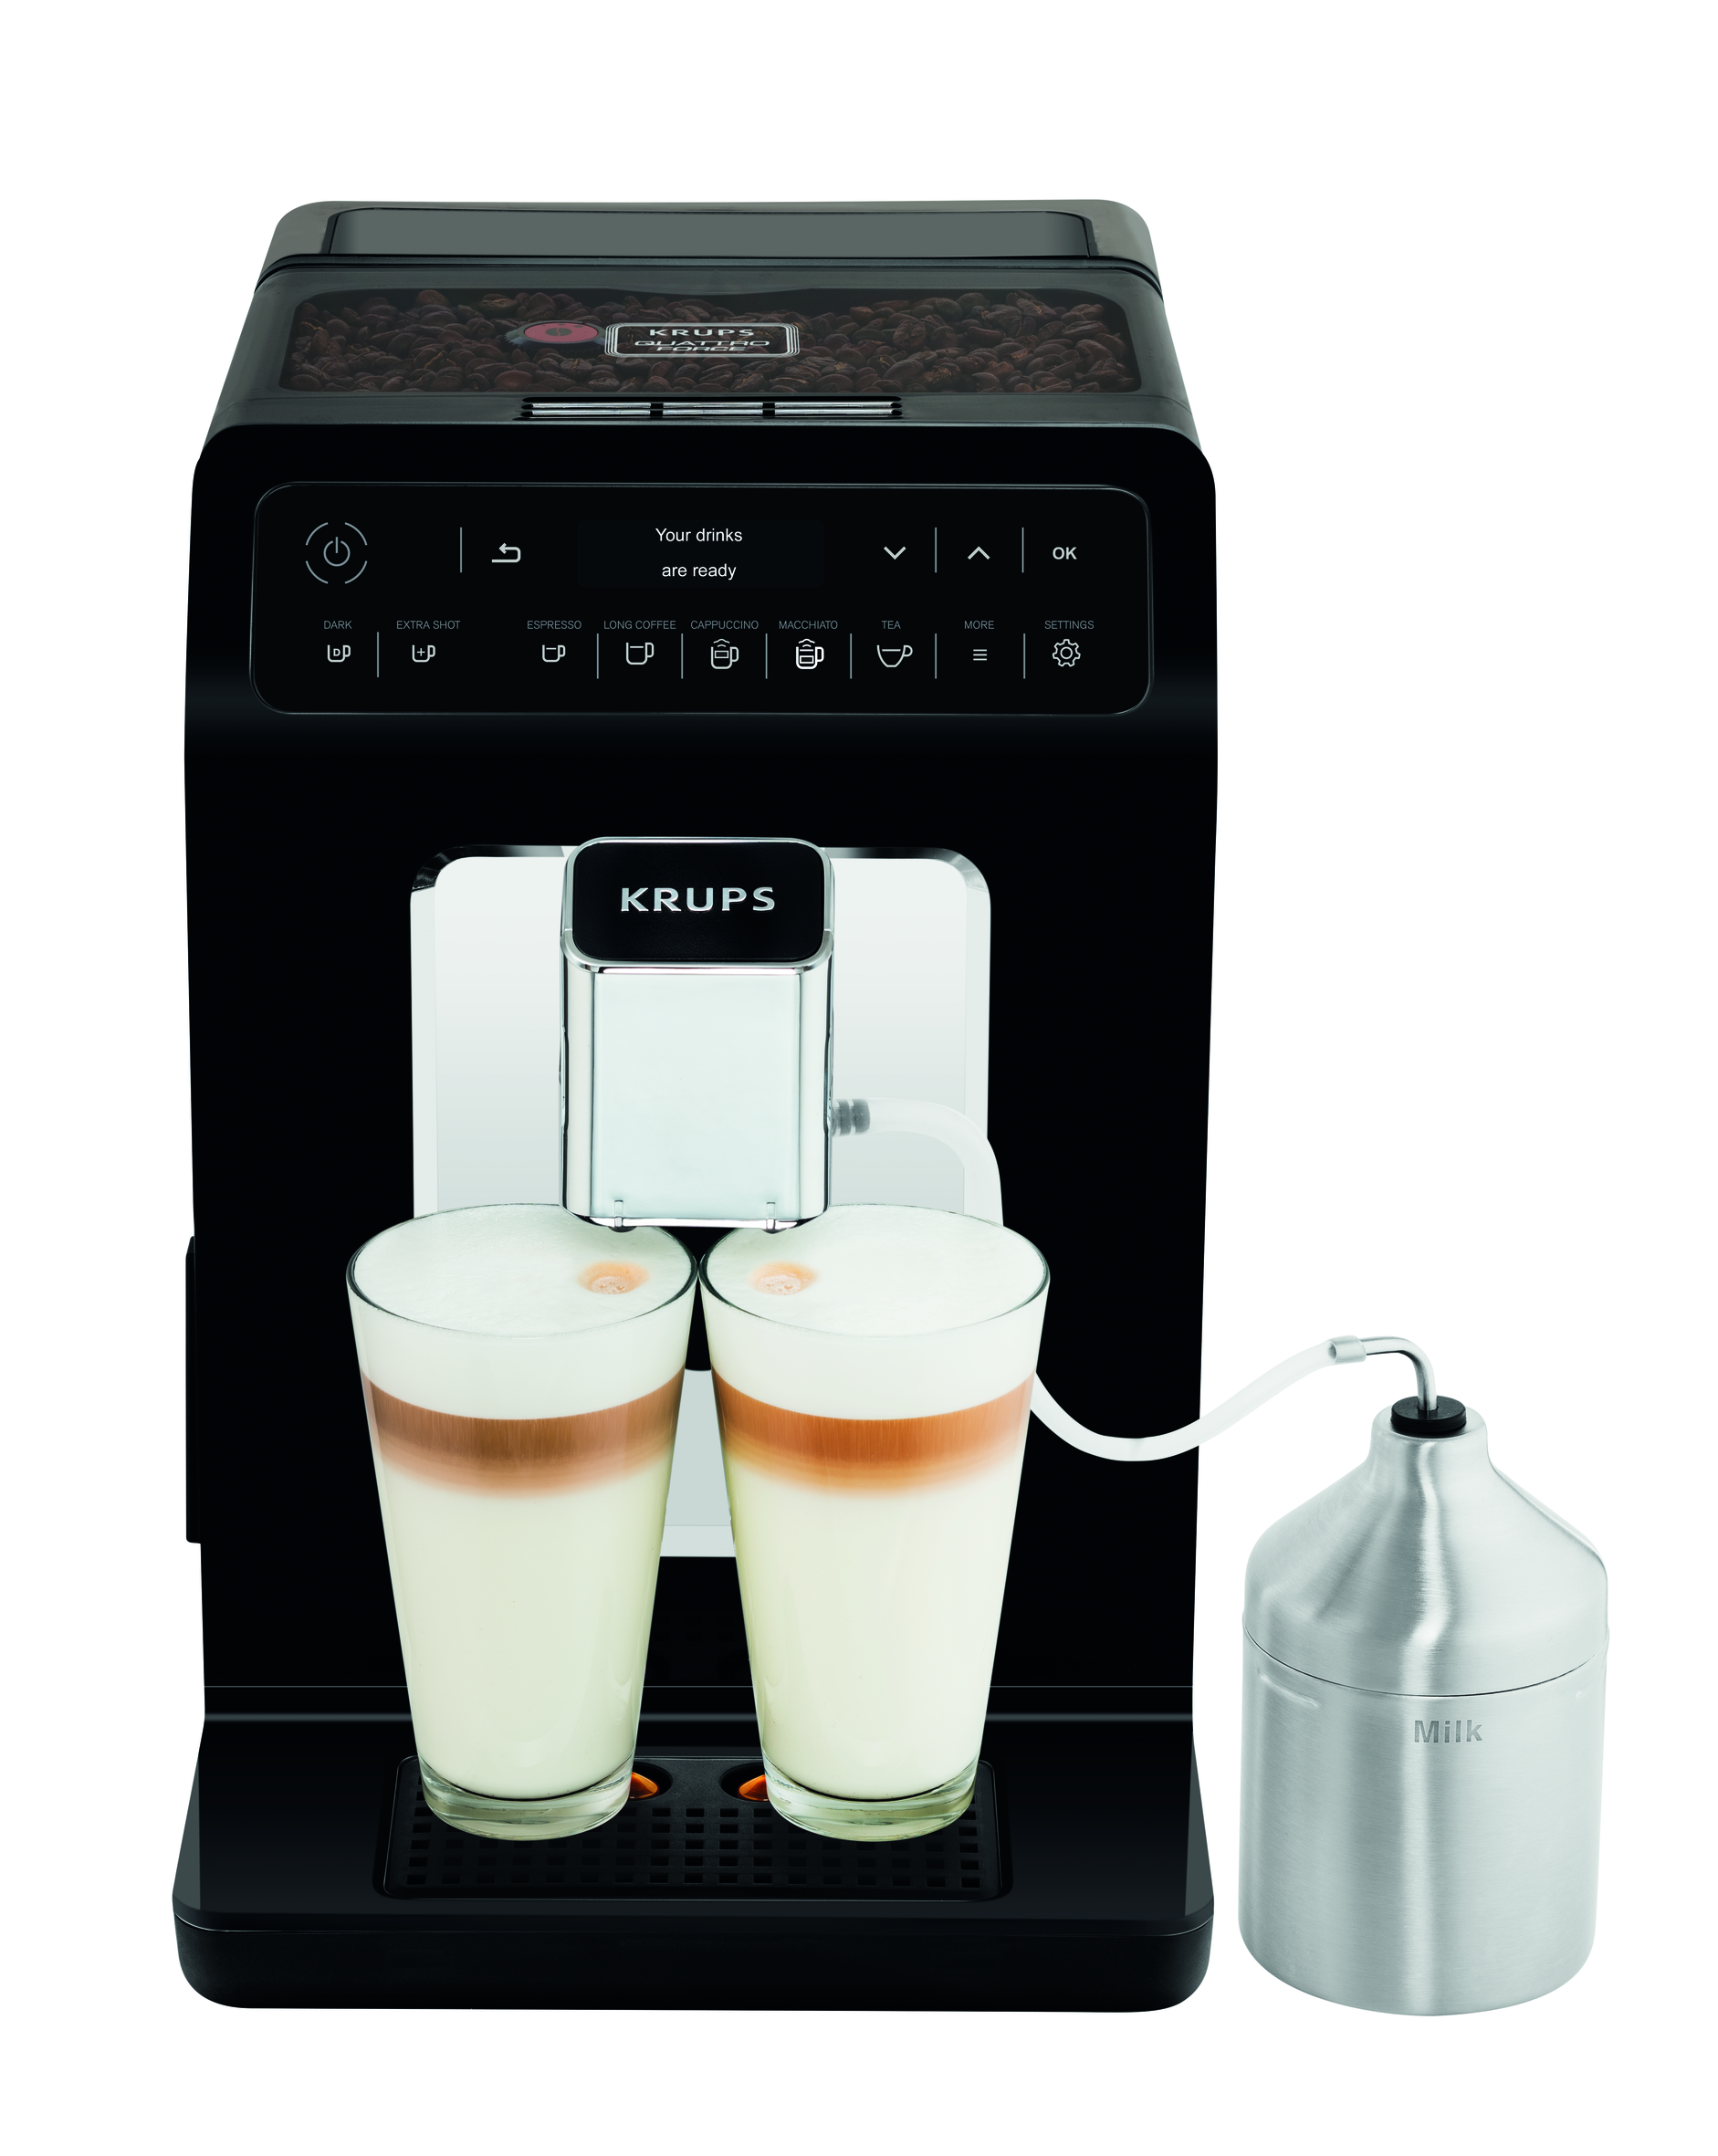 Автоматическая кофемашина Krups EVIDENCE EA891810, цвет черный - фото 1